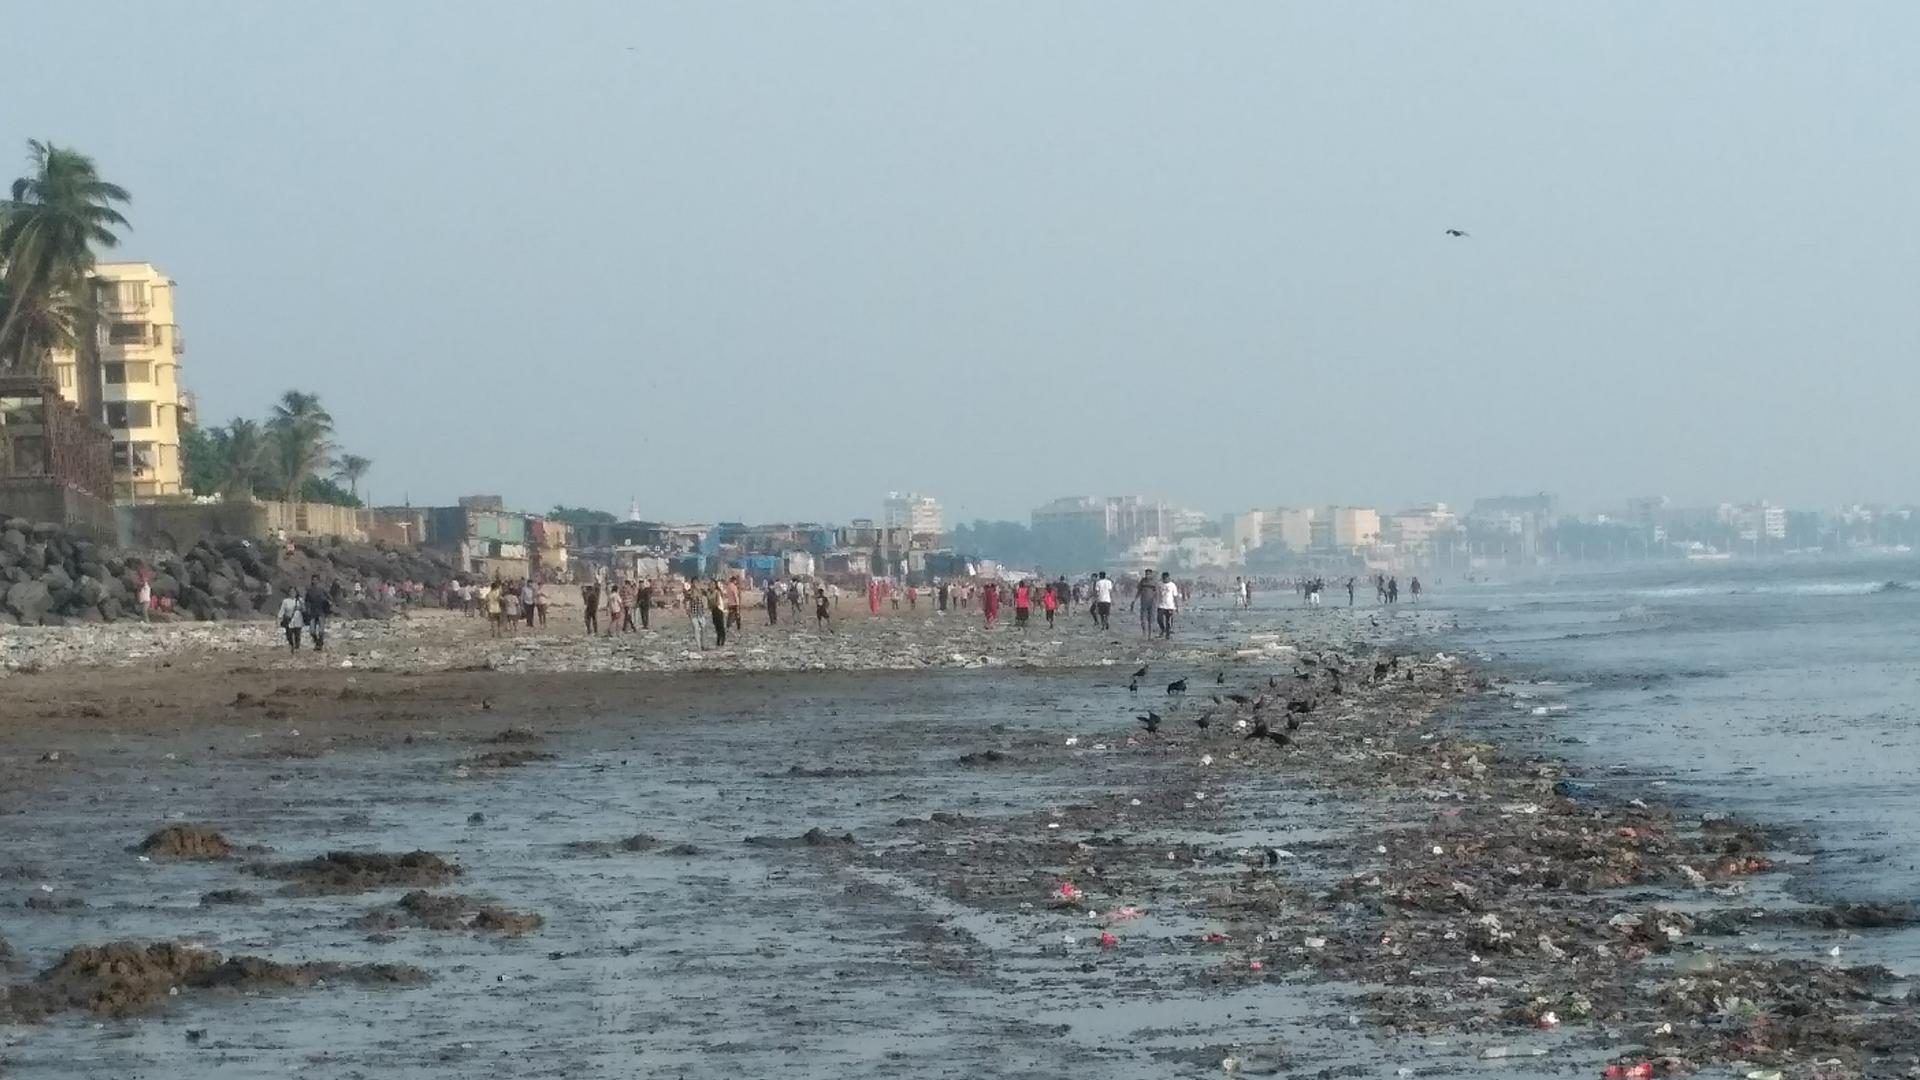 Versova beach, Mumbai